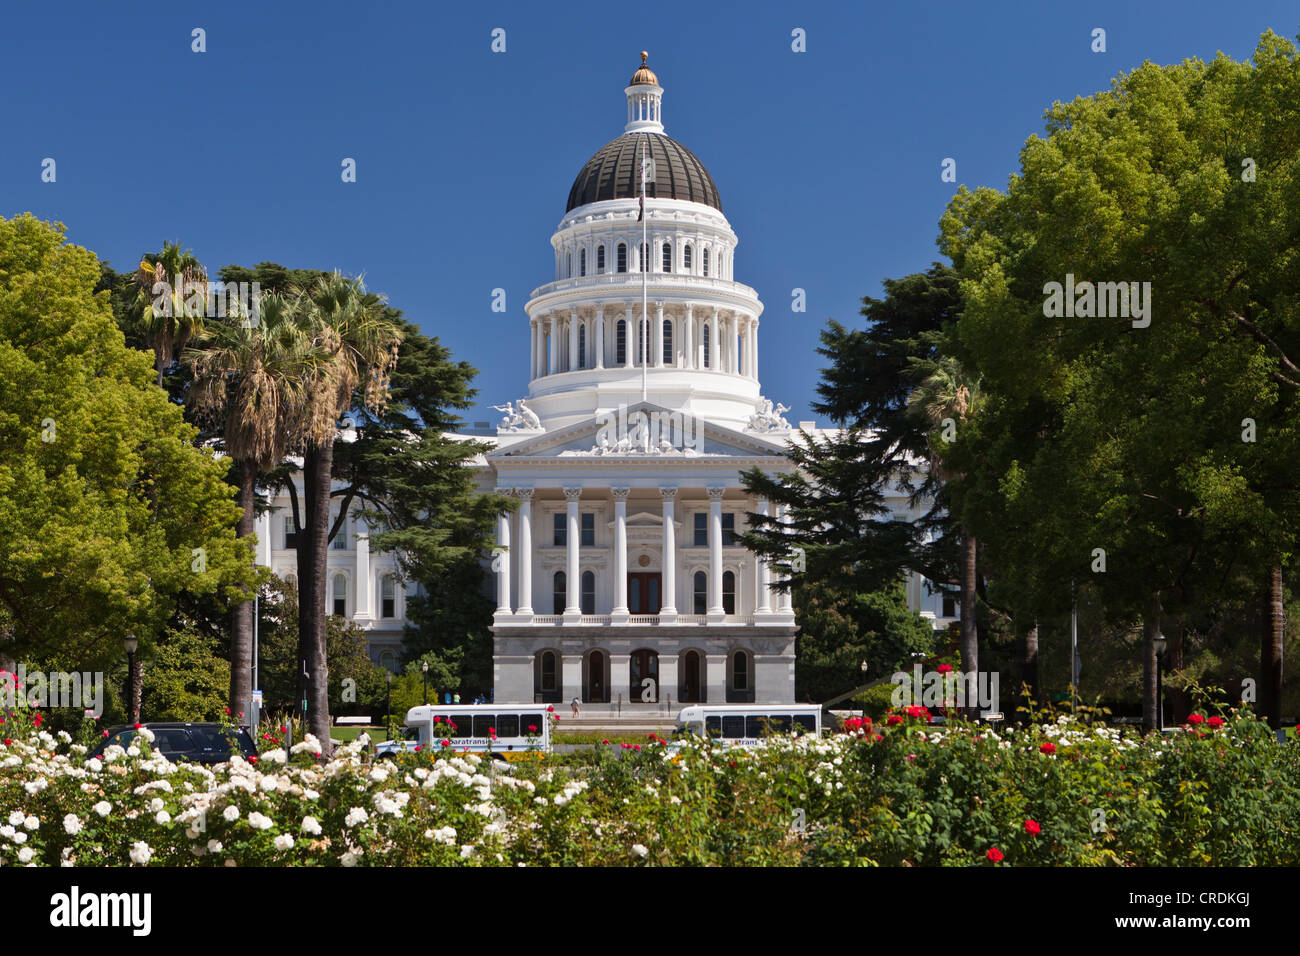 Kalifornien Zustand-Kapitol, Sitz des Gesetzgebers und der Gouverneur von Kalifornien, Sacramento, Kalifornien, USA, Nordamerika Stockfoto